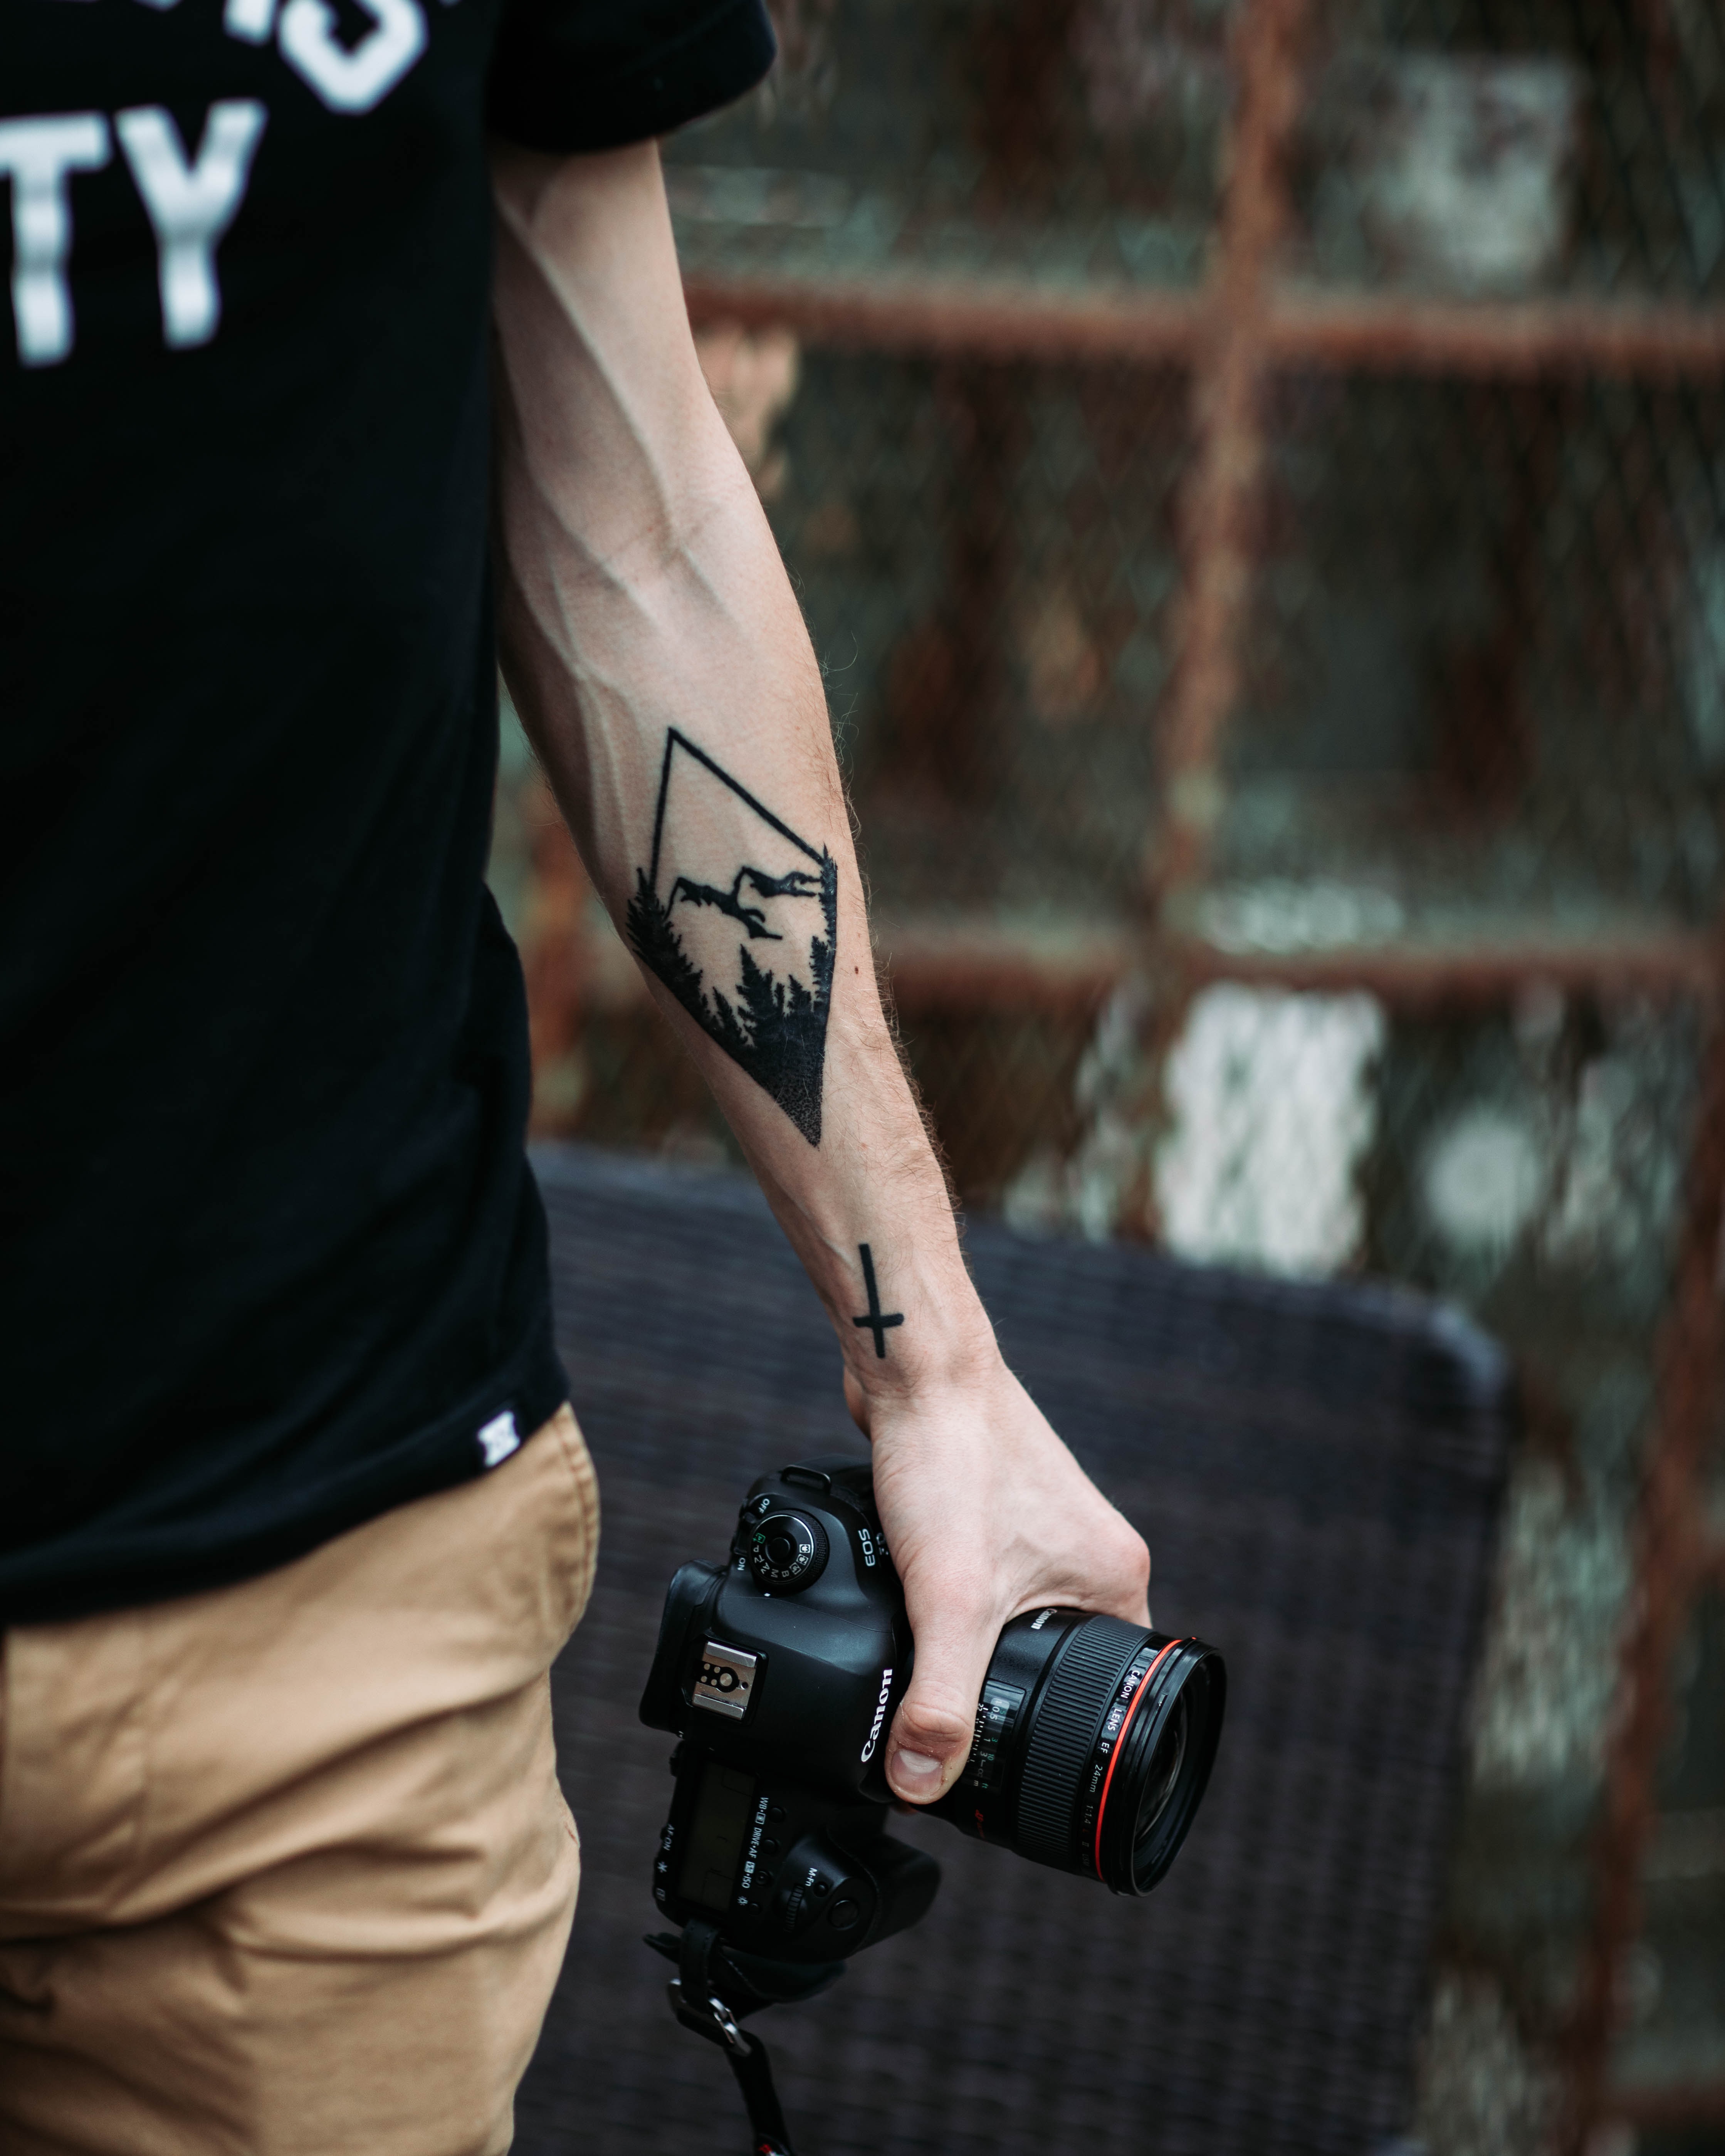 photographer, tattoo, tattoos, hand, technology, technologies, camera cellphone